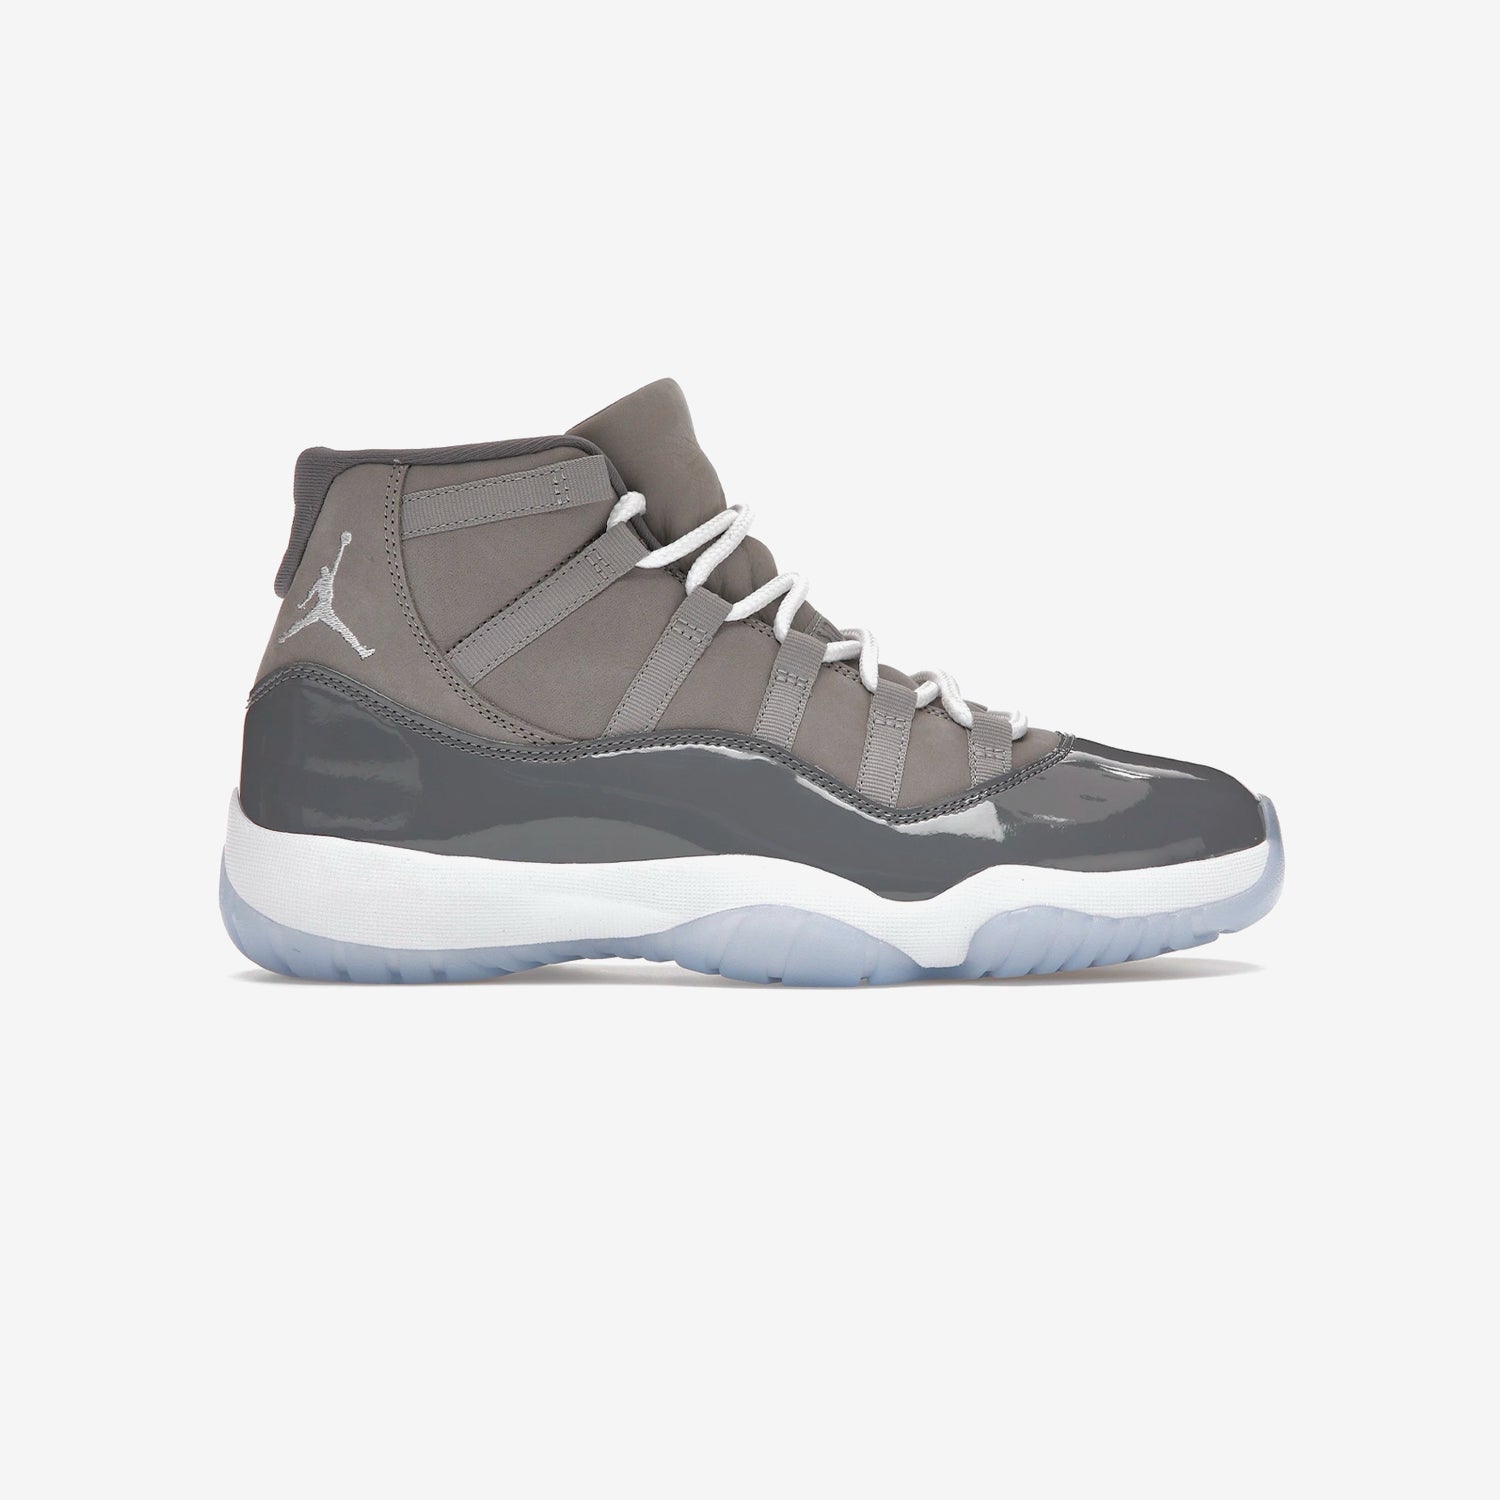 Jordan 11 - Cool Grey